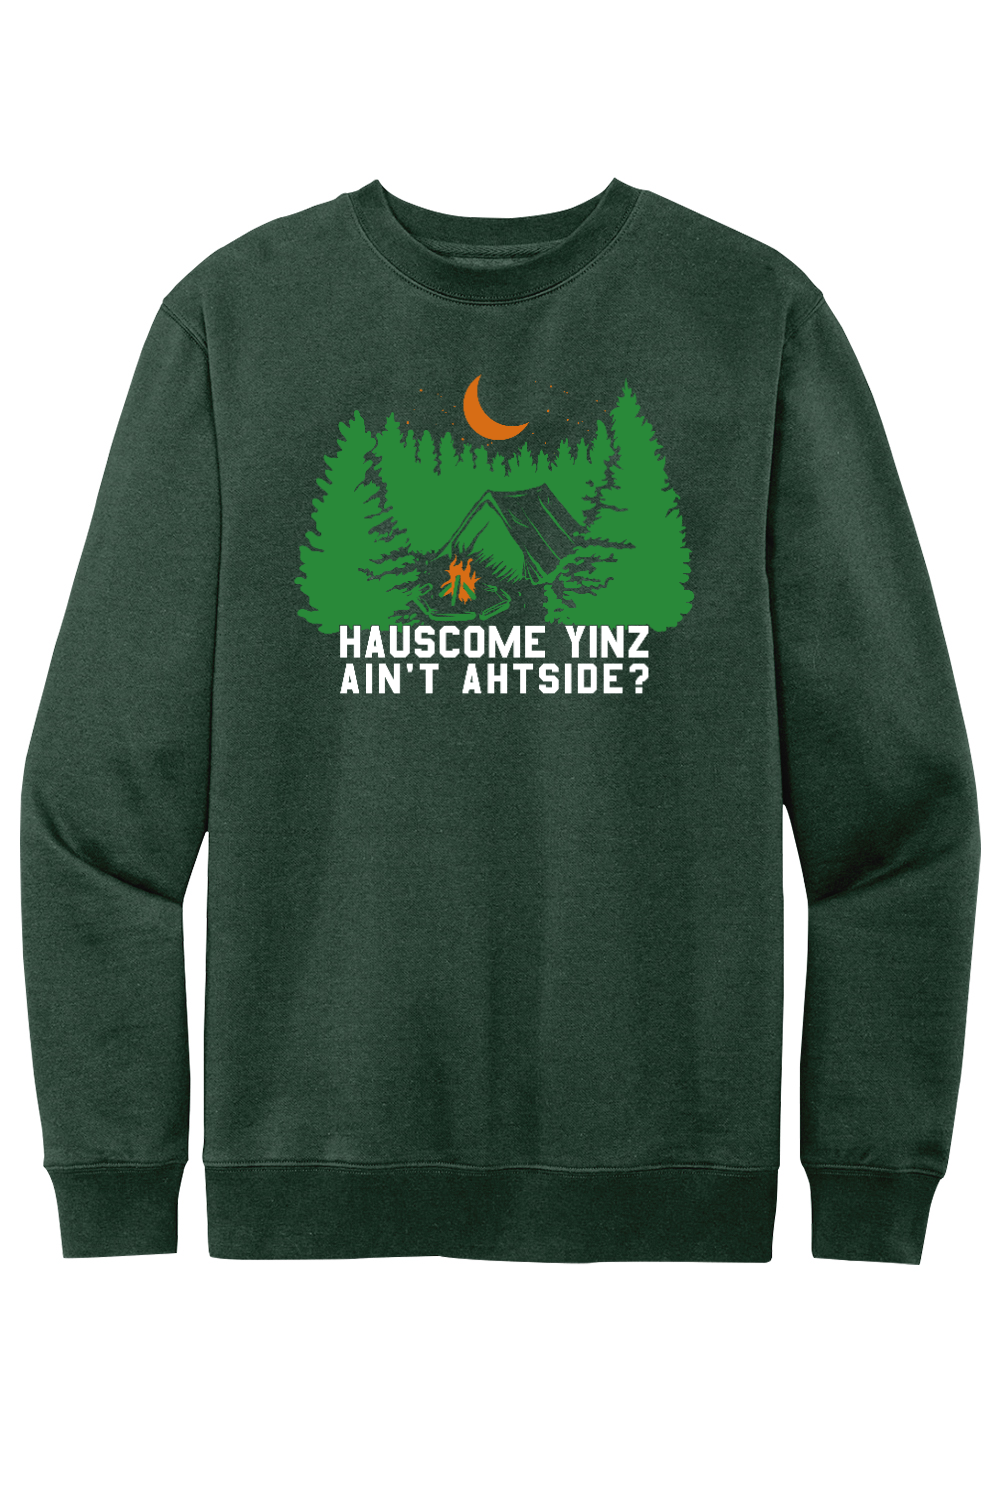 Hauscome Yinz Ain't Ahtside? - Fleece Crewneck Sweatshirt - Yinzylvania